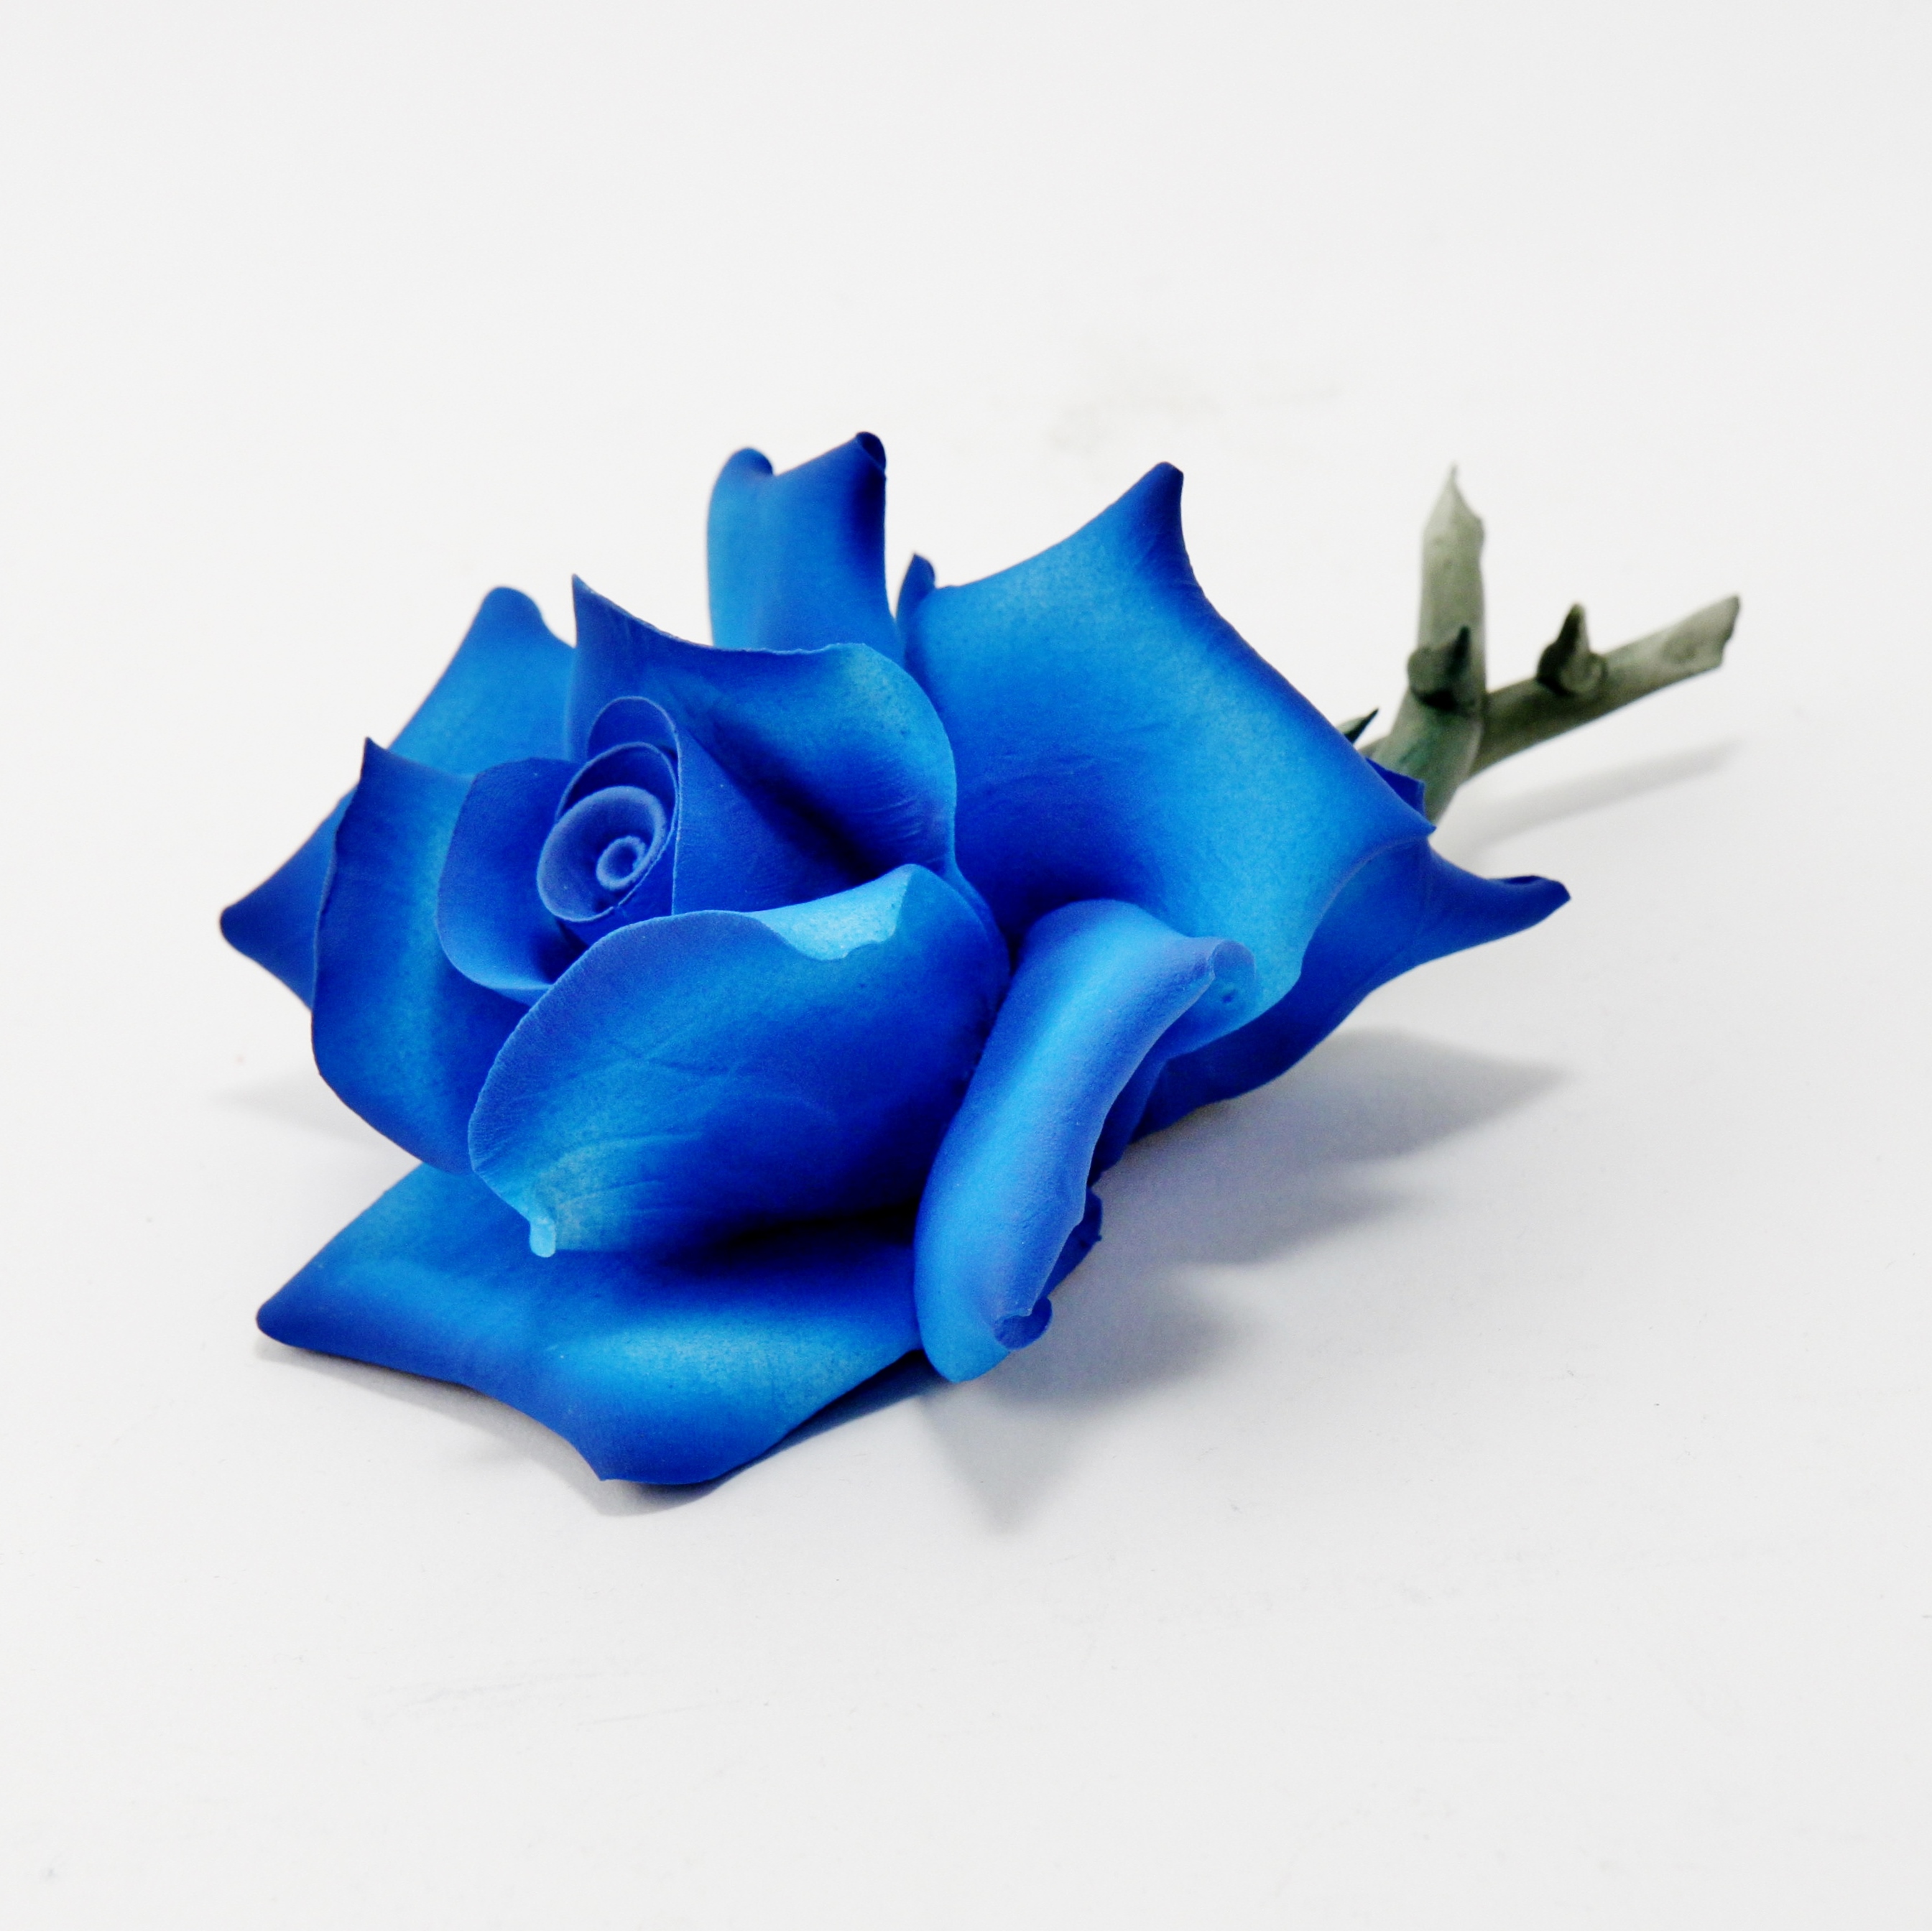 Rosa Colore Blu Luce by Dea Capodimonte